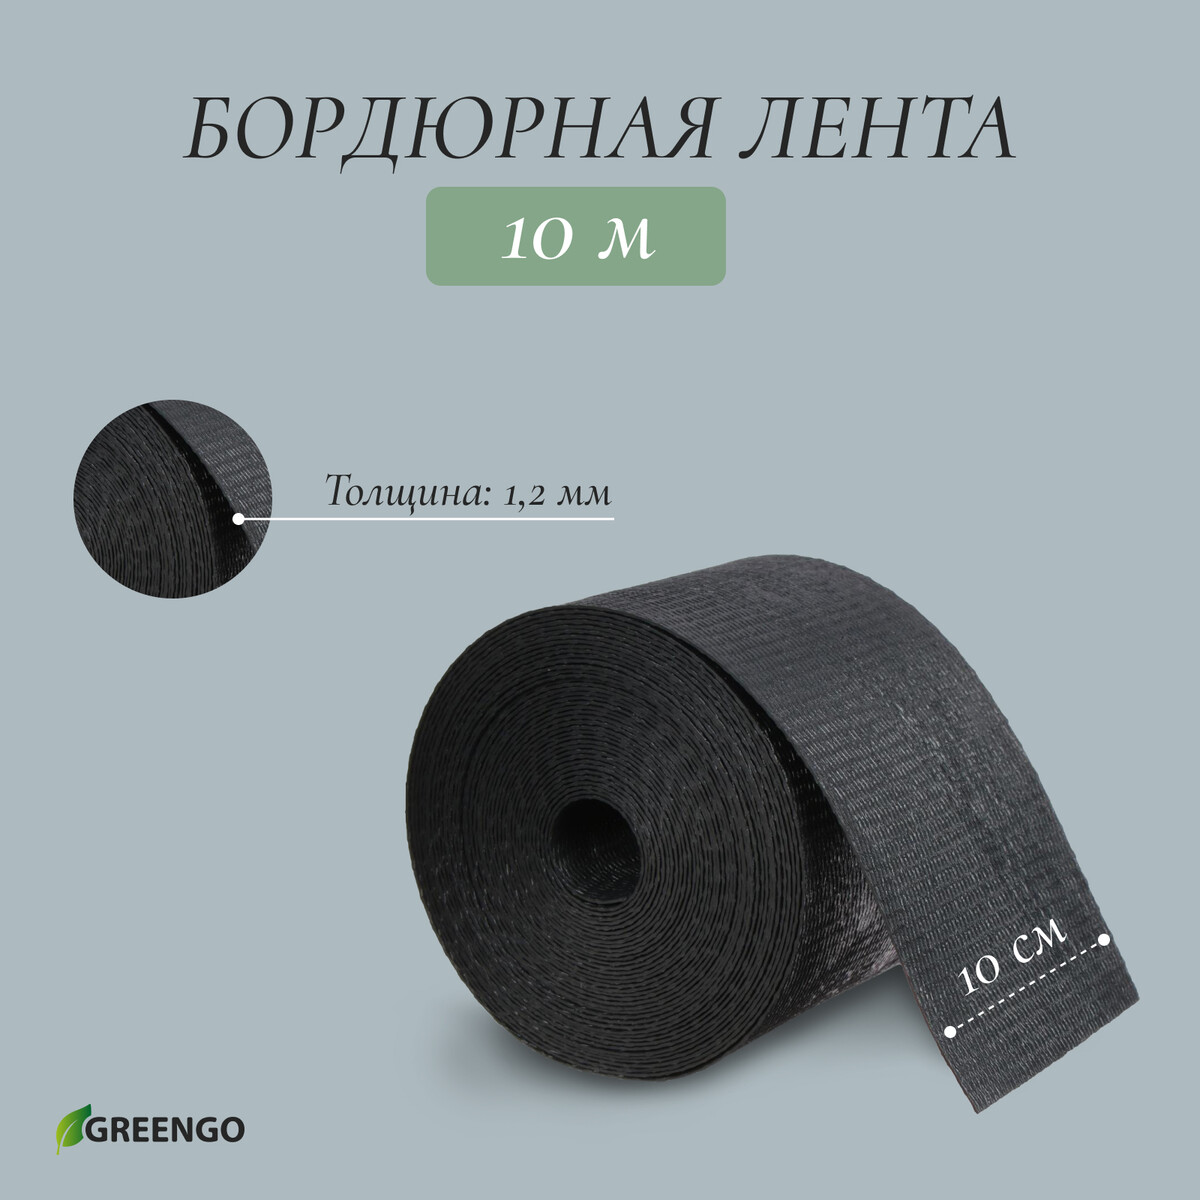 Лента бордюрная, 0,1 × 10 м, толщина 1,2 мм, пластиковая, черная, greengo лента бордюрная 0 1 × 9 м толщина 0 6 мм пластиковая гофра черная